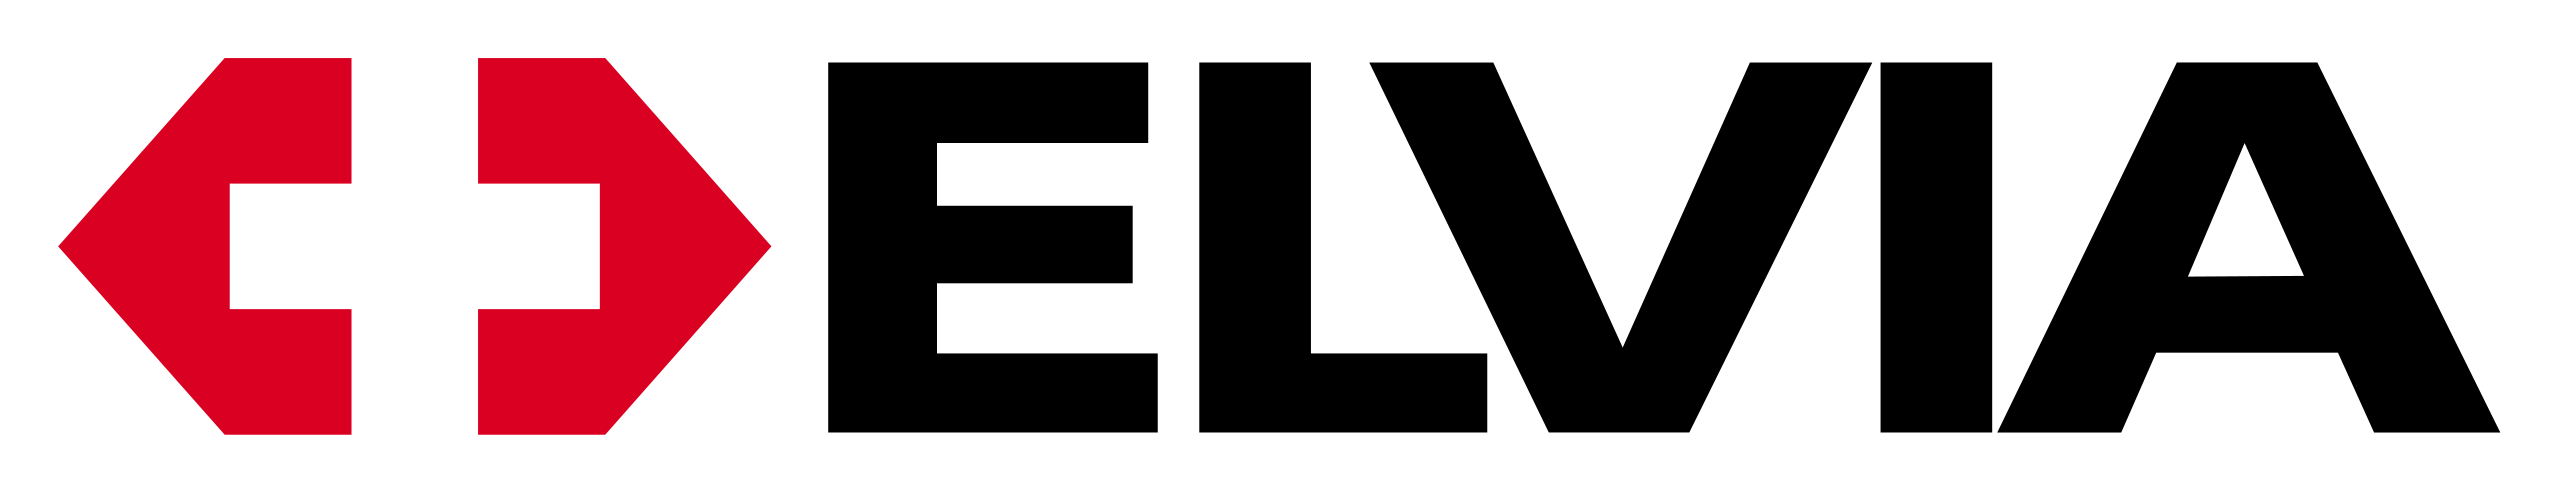 Logo Elvia